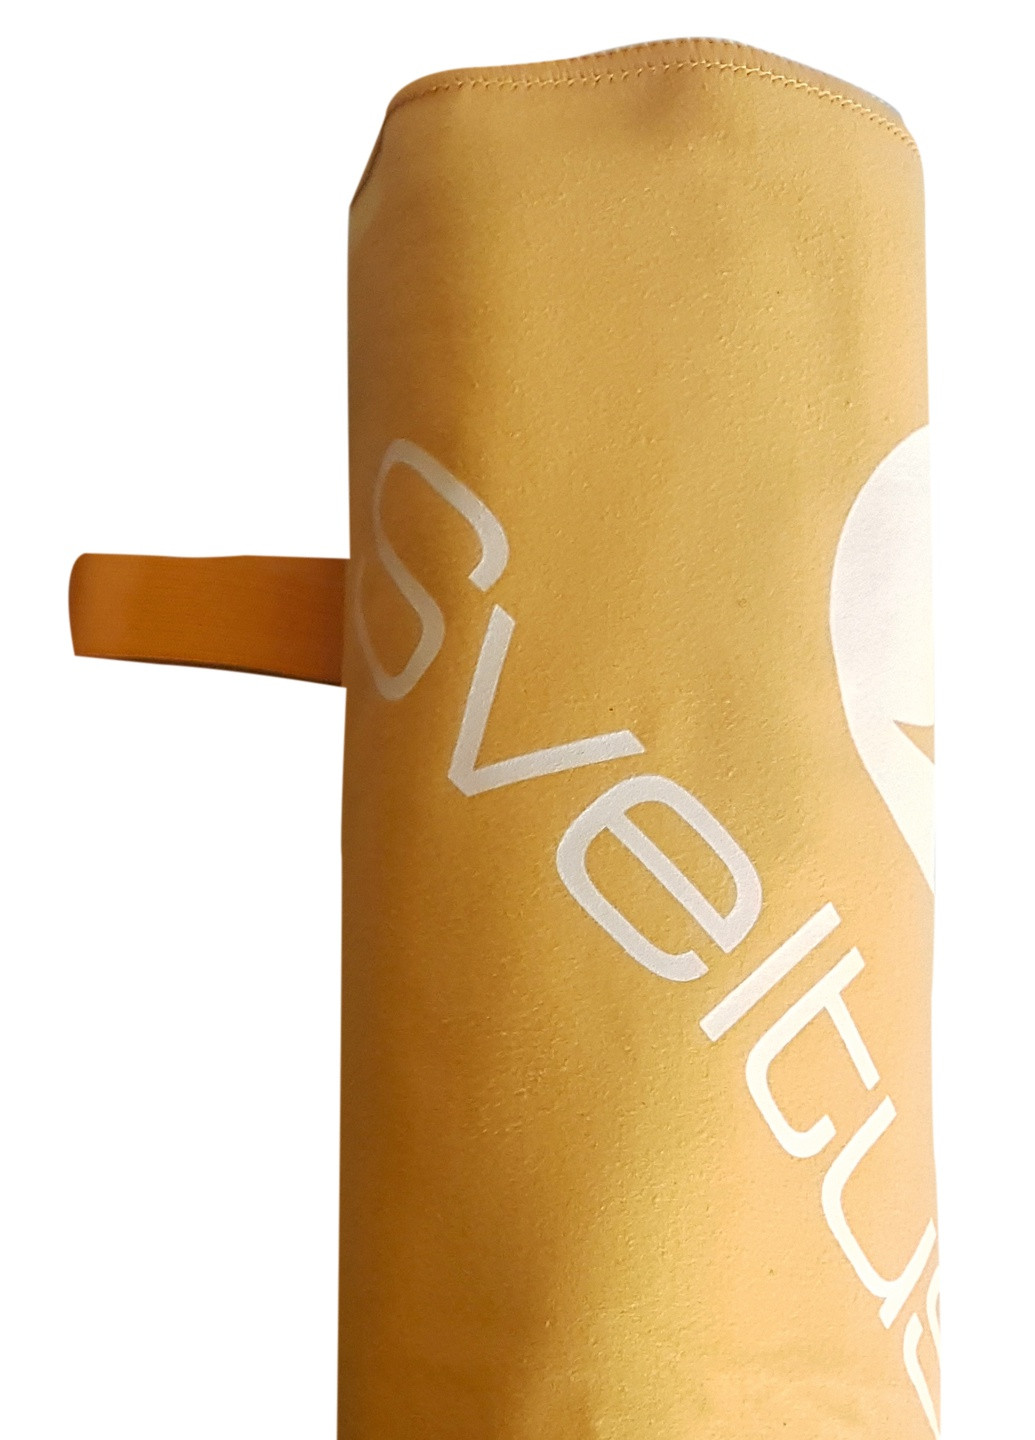 Sveltus полотенце из микрофибры оранжевое 130x80 см (slts-9505) однотонный оранжевый производство - Франция